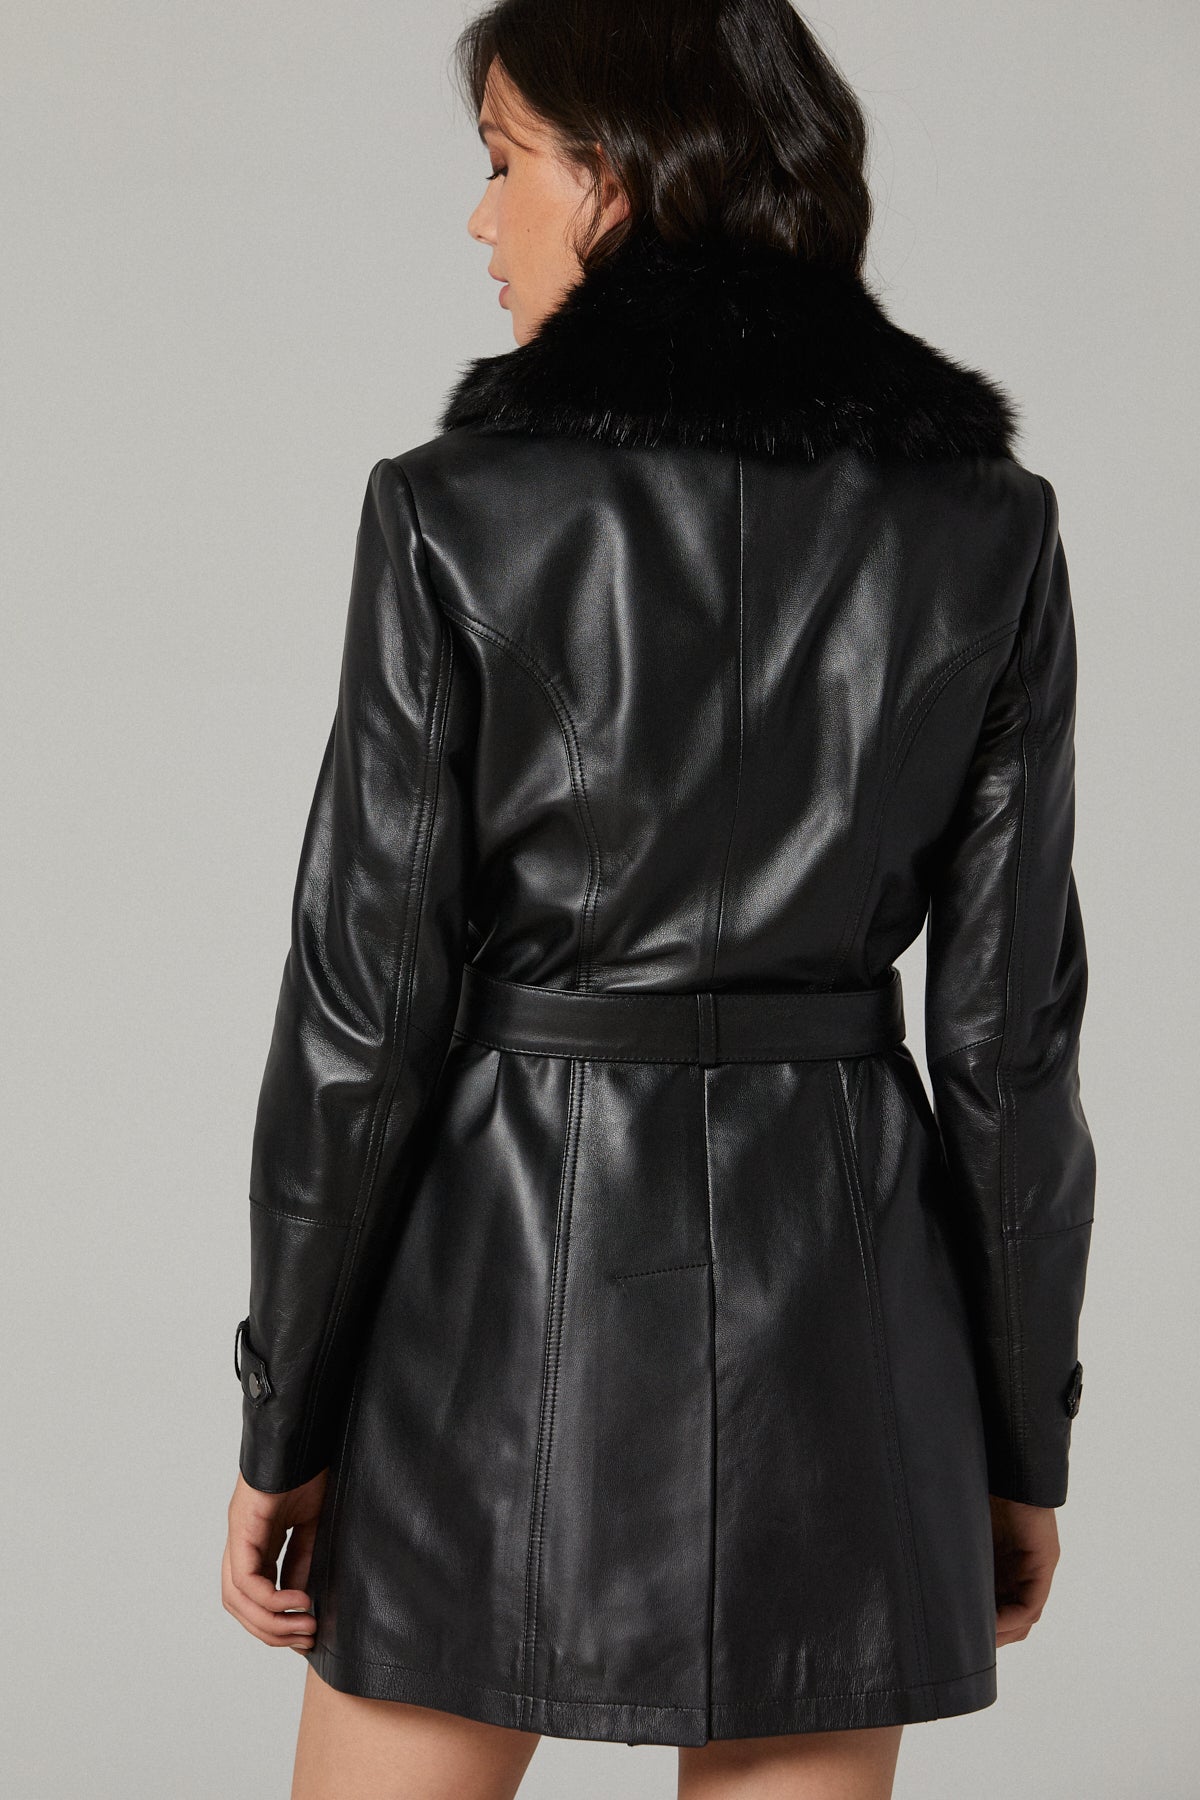 Rhoda Women's Black Fur Long Leather Coat